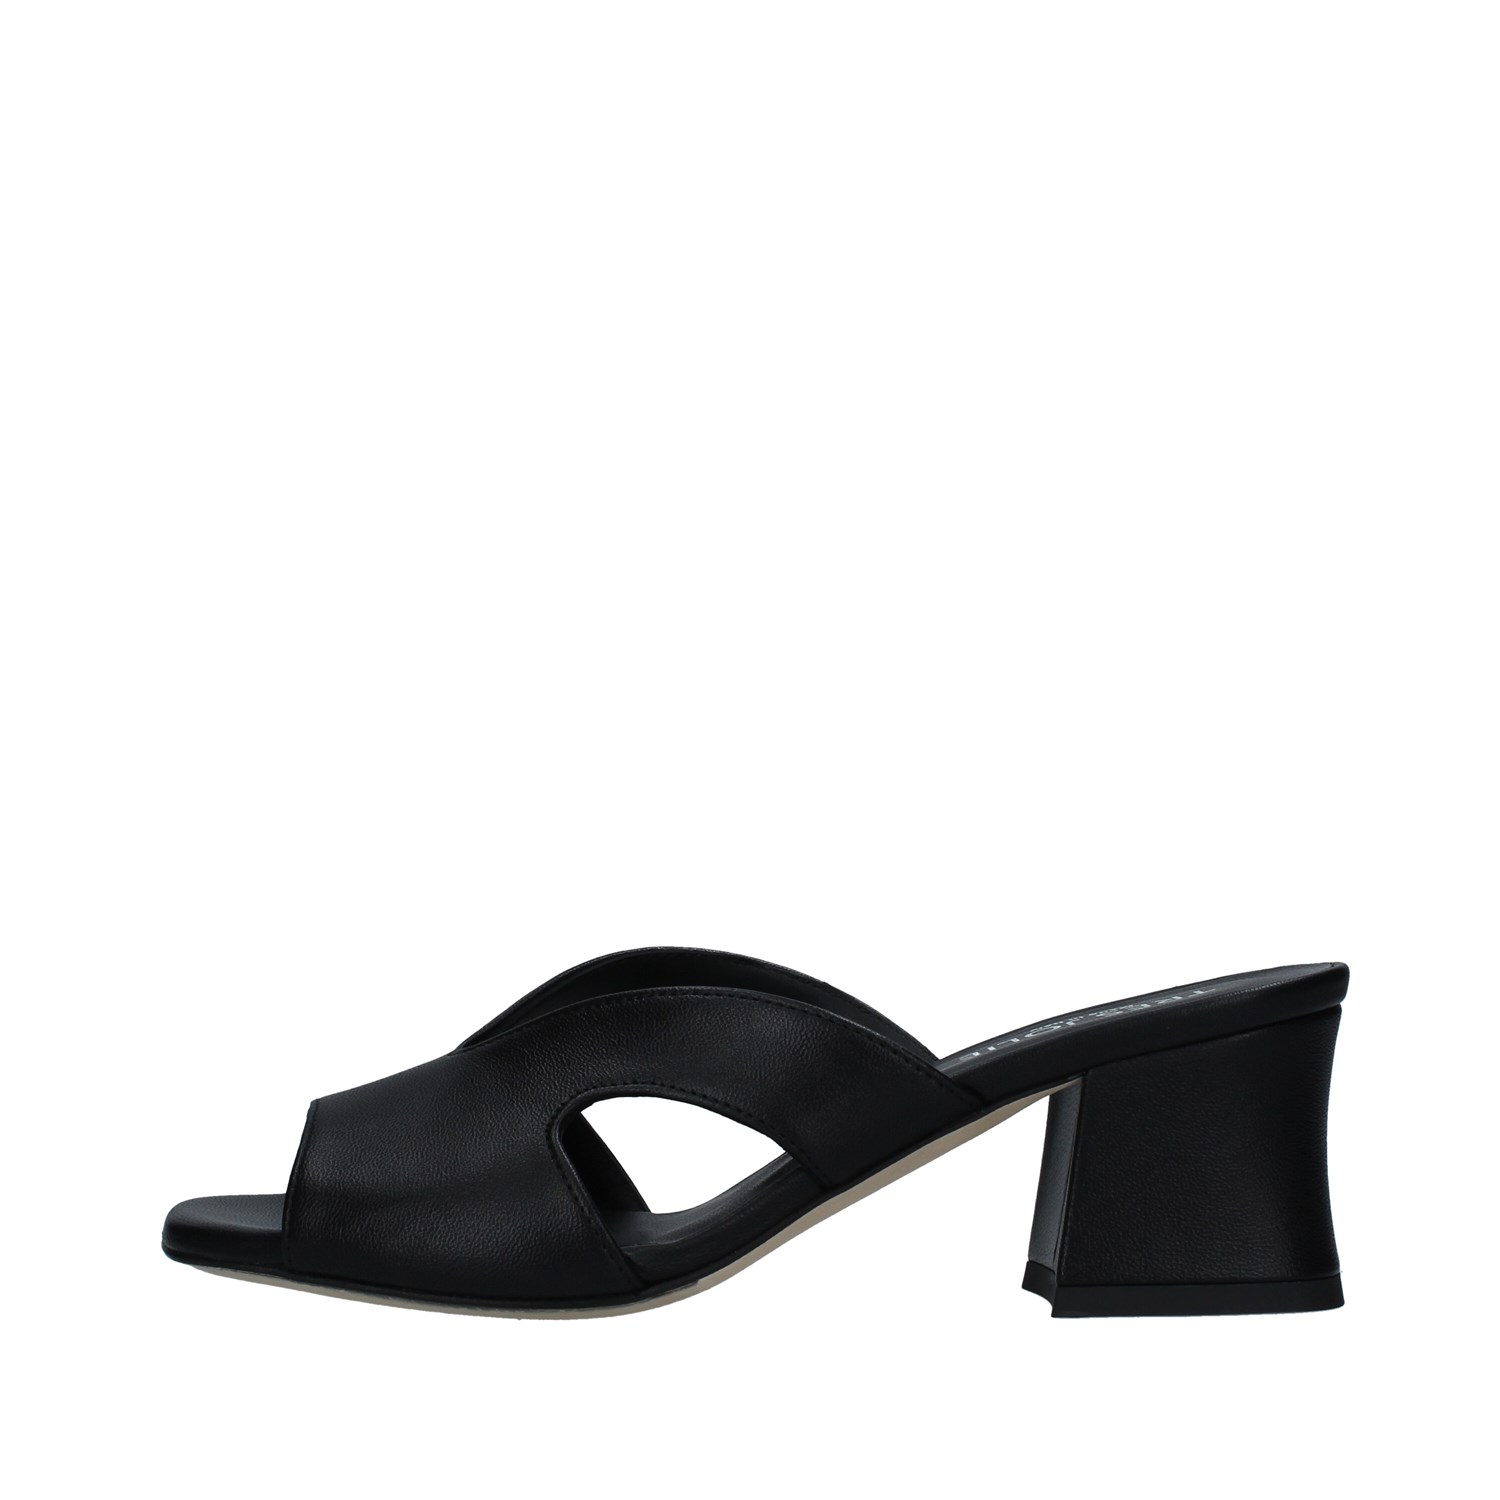 Tres Jolie 2183/ARIA BLACK Shoes Woman